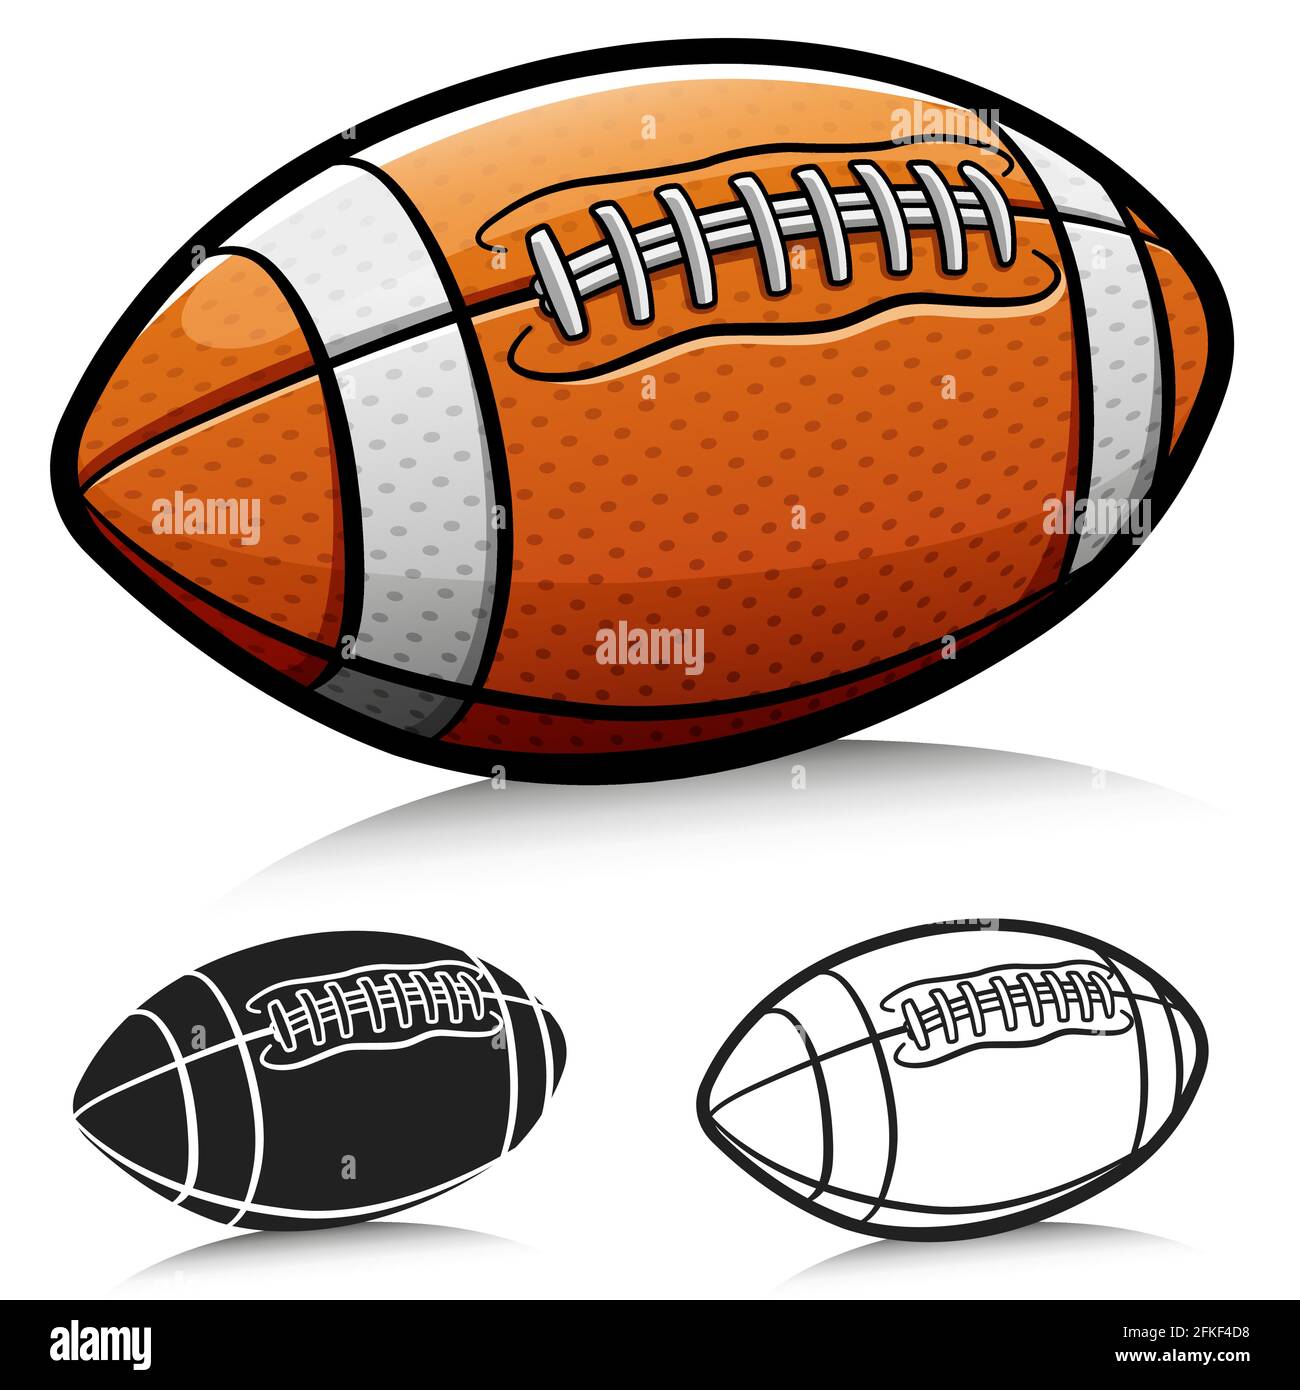 Vektor-Illustration von american Football Ball Cartoon Stock Vektor